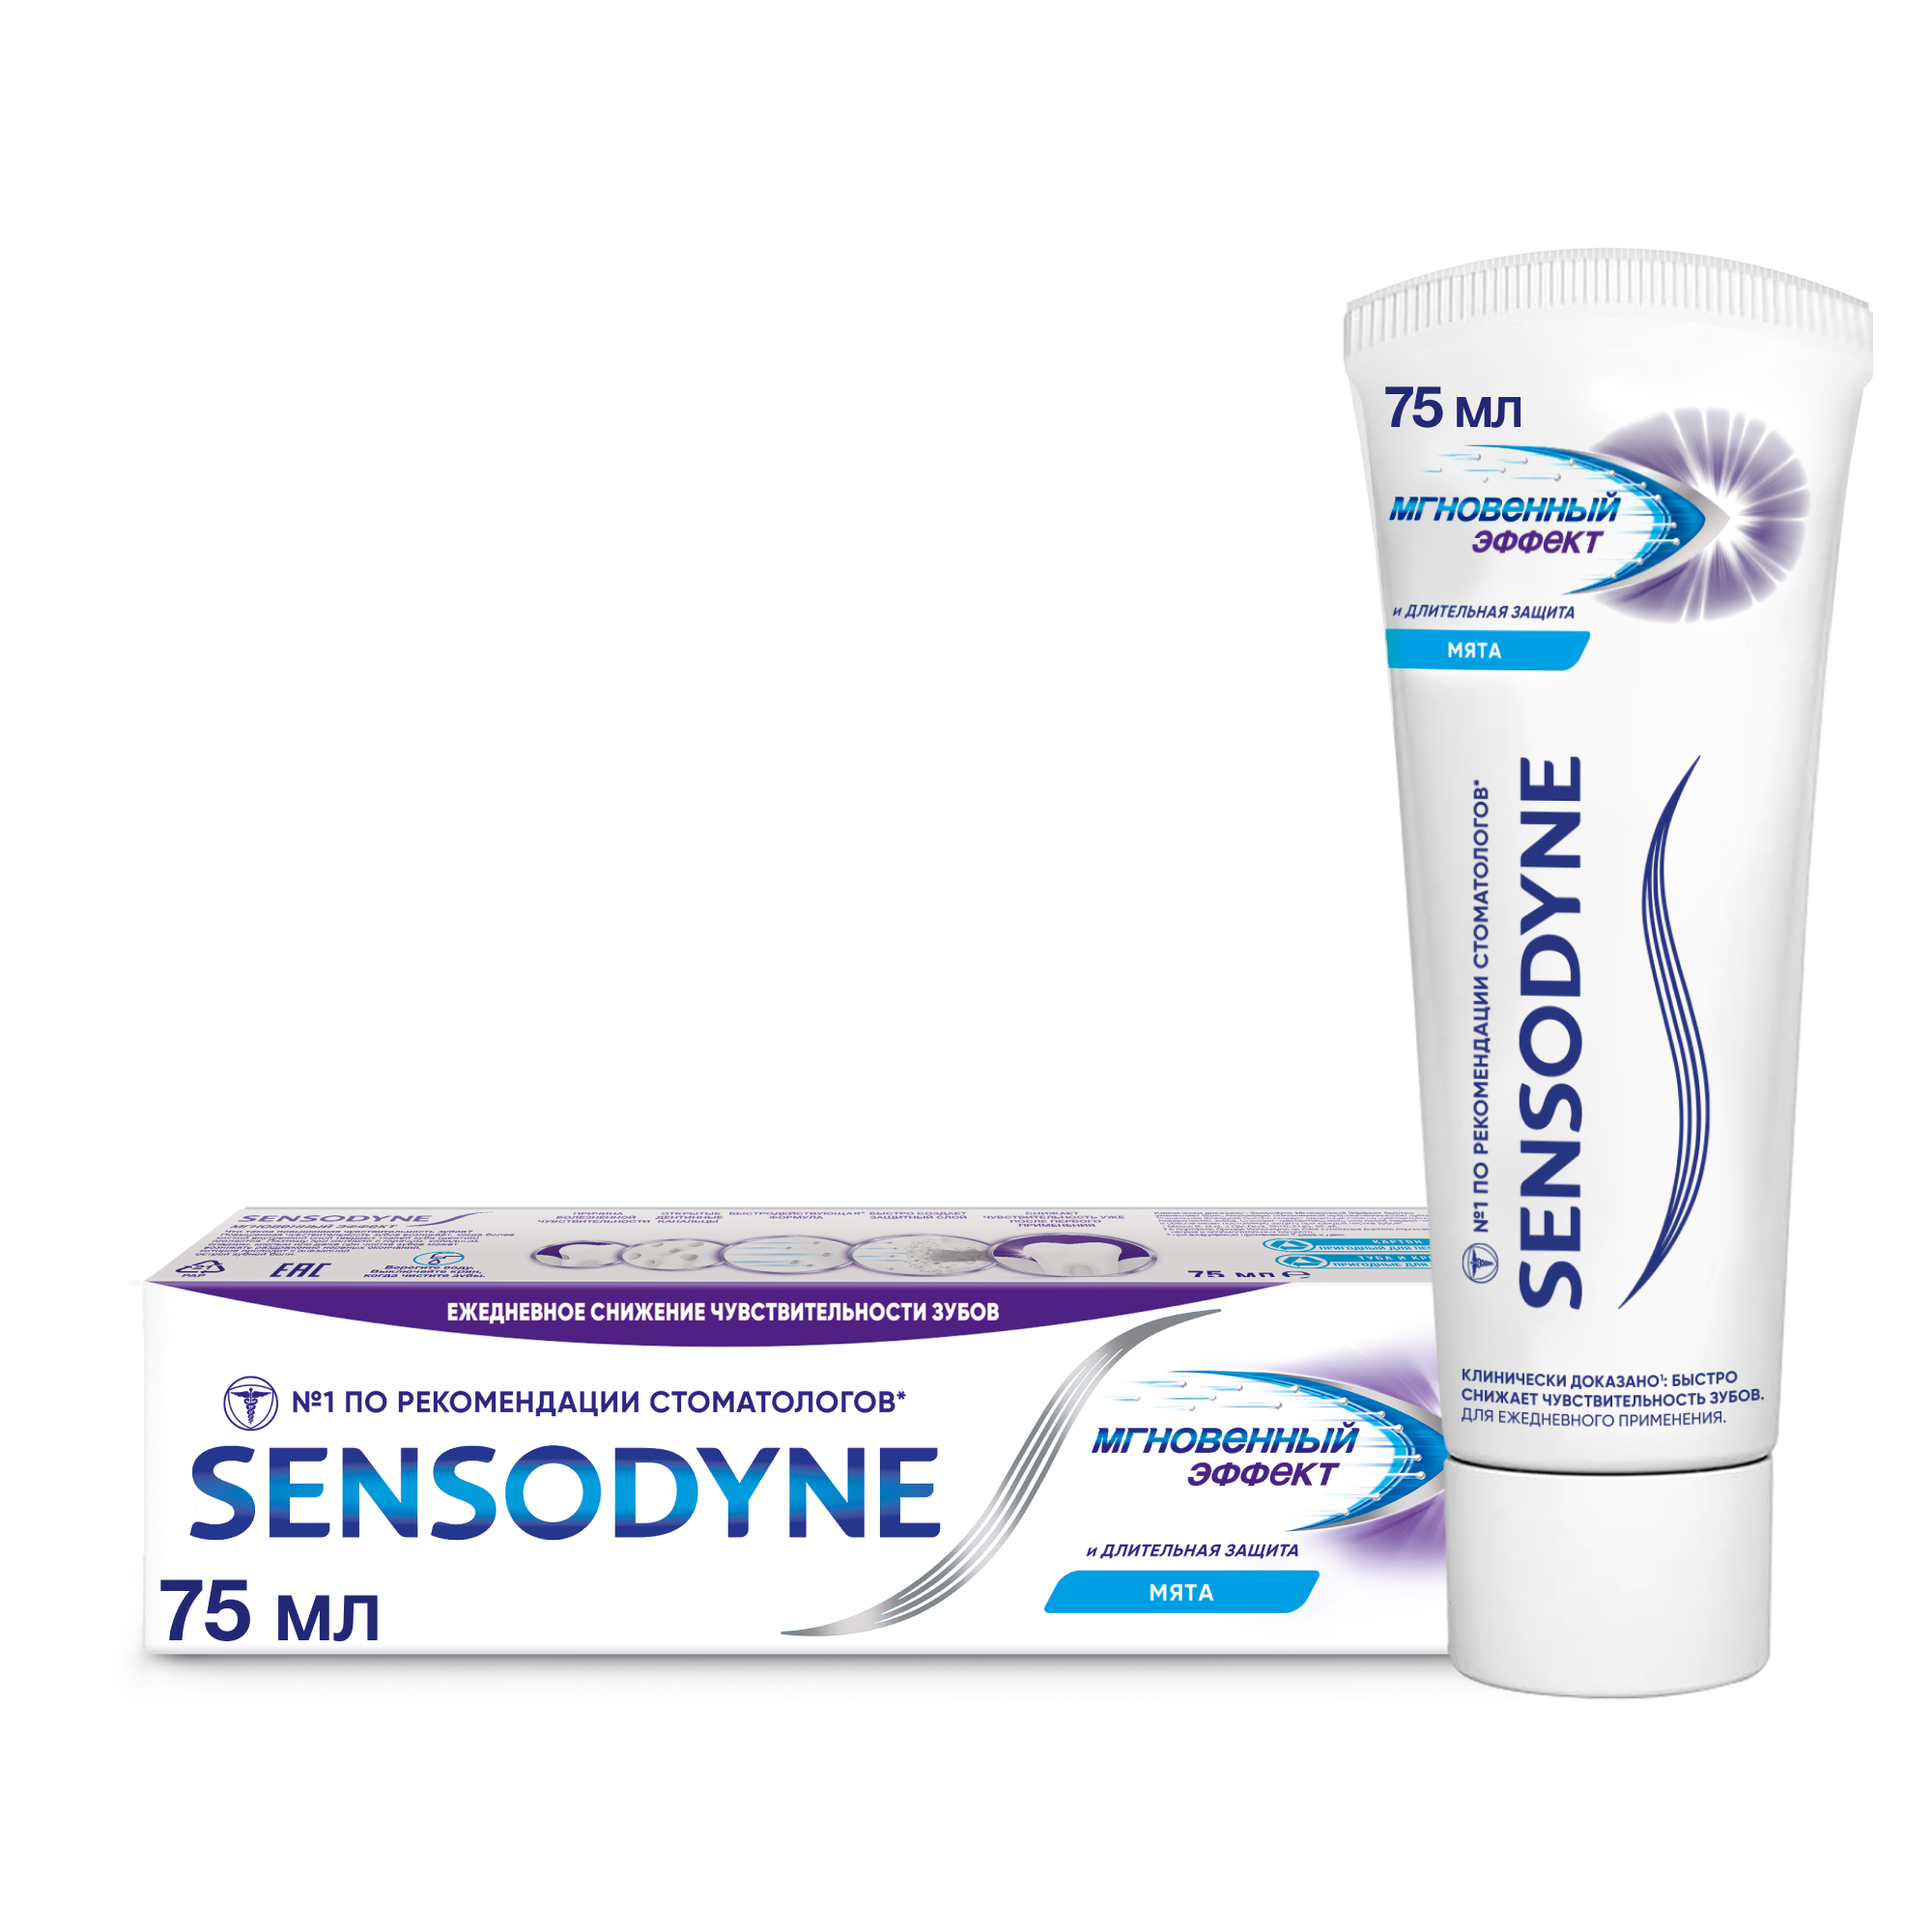 Зубная паста Sensodyne Мгновенный Эффект для чувствительных зубов с фтором, 75 мл зубная паста для чувствительных зубов day2day 100г